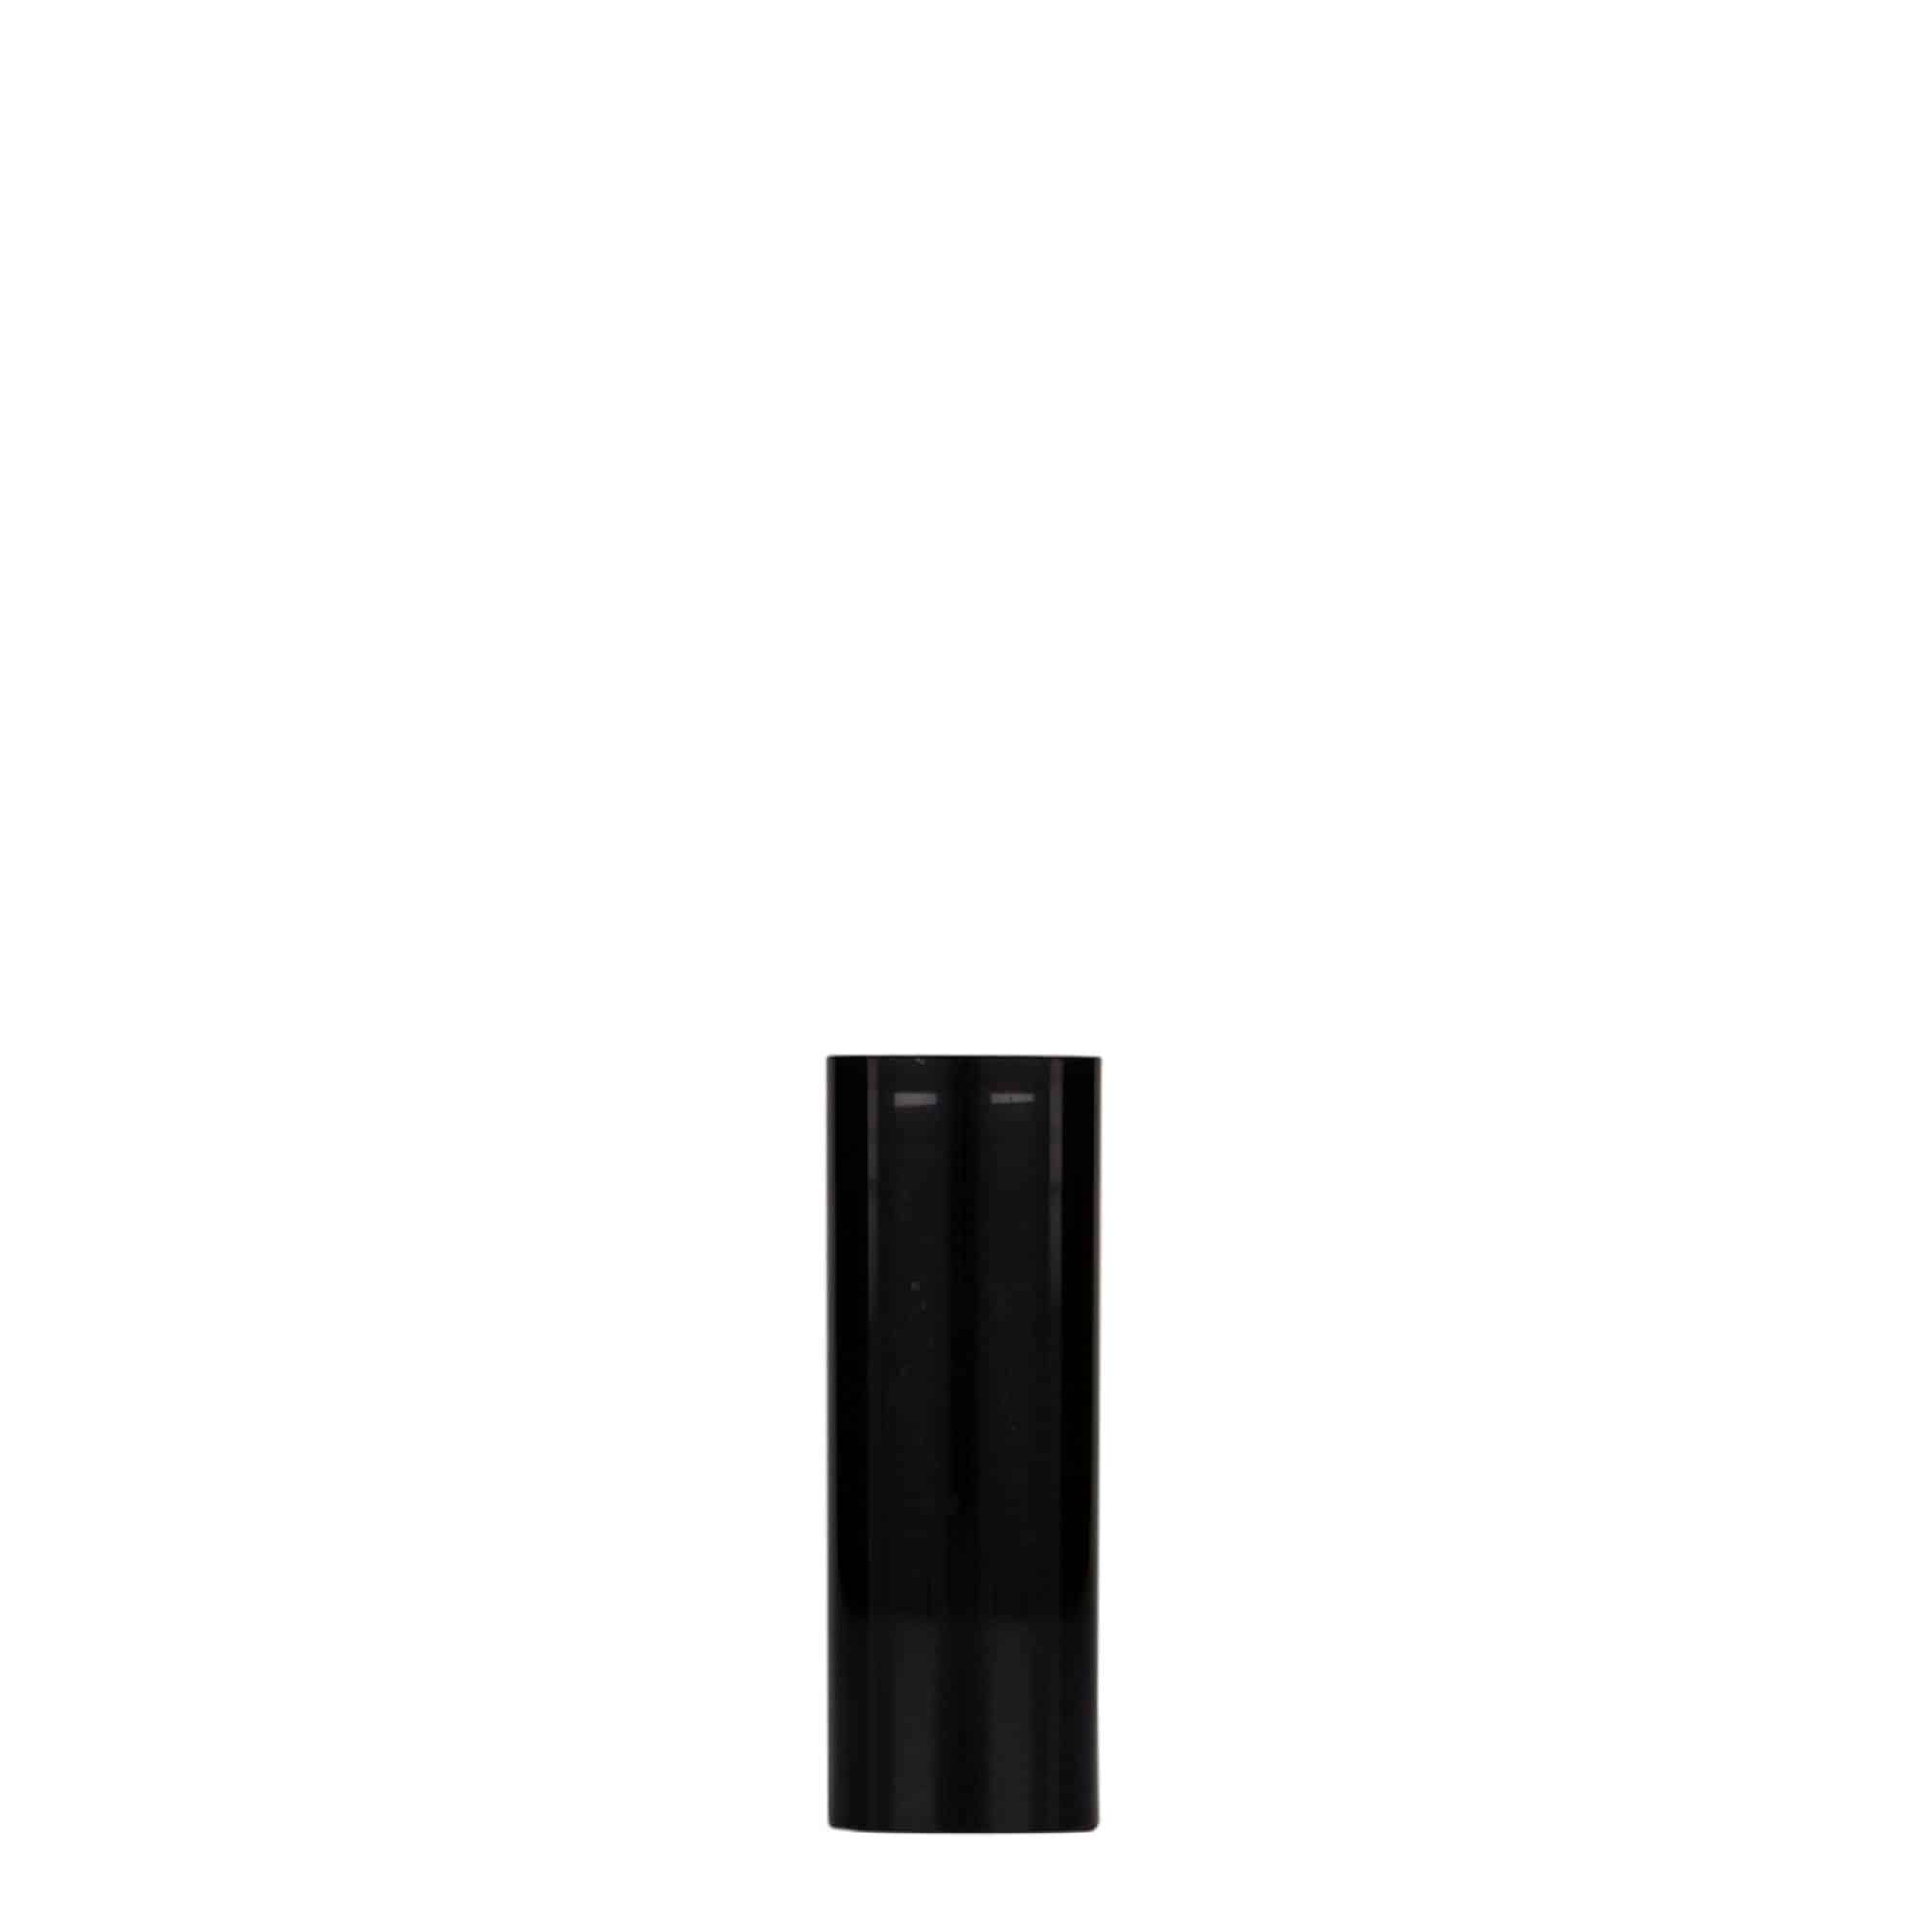 10 ml dozownik airless 'Nano', tworzywo sztuczne PP, kolor czarny